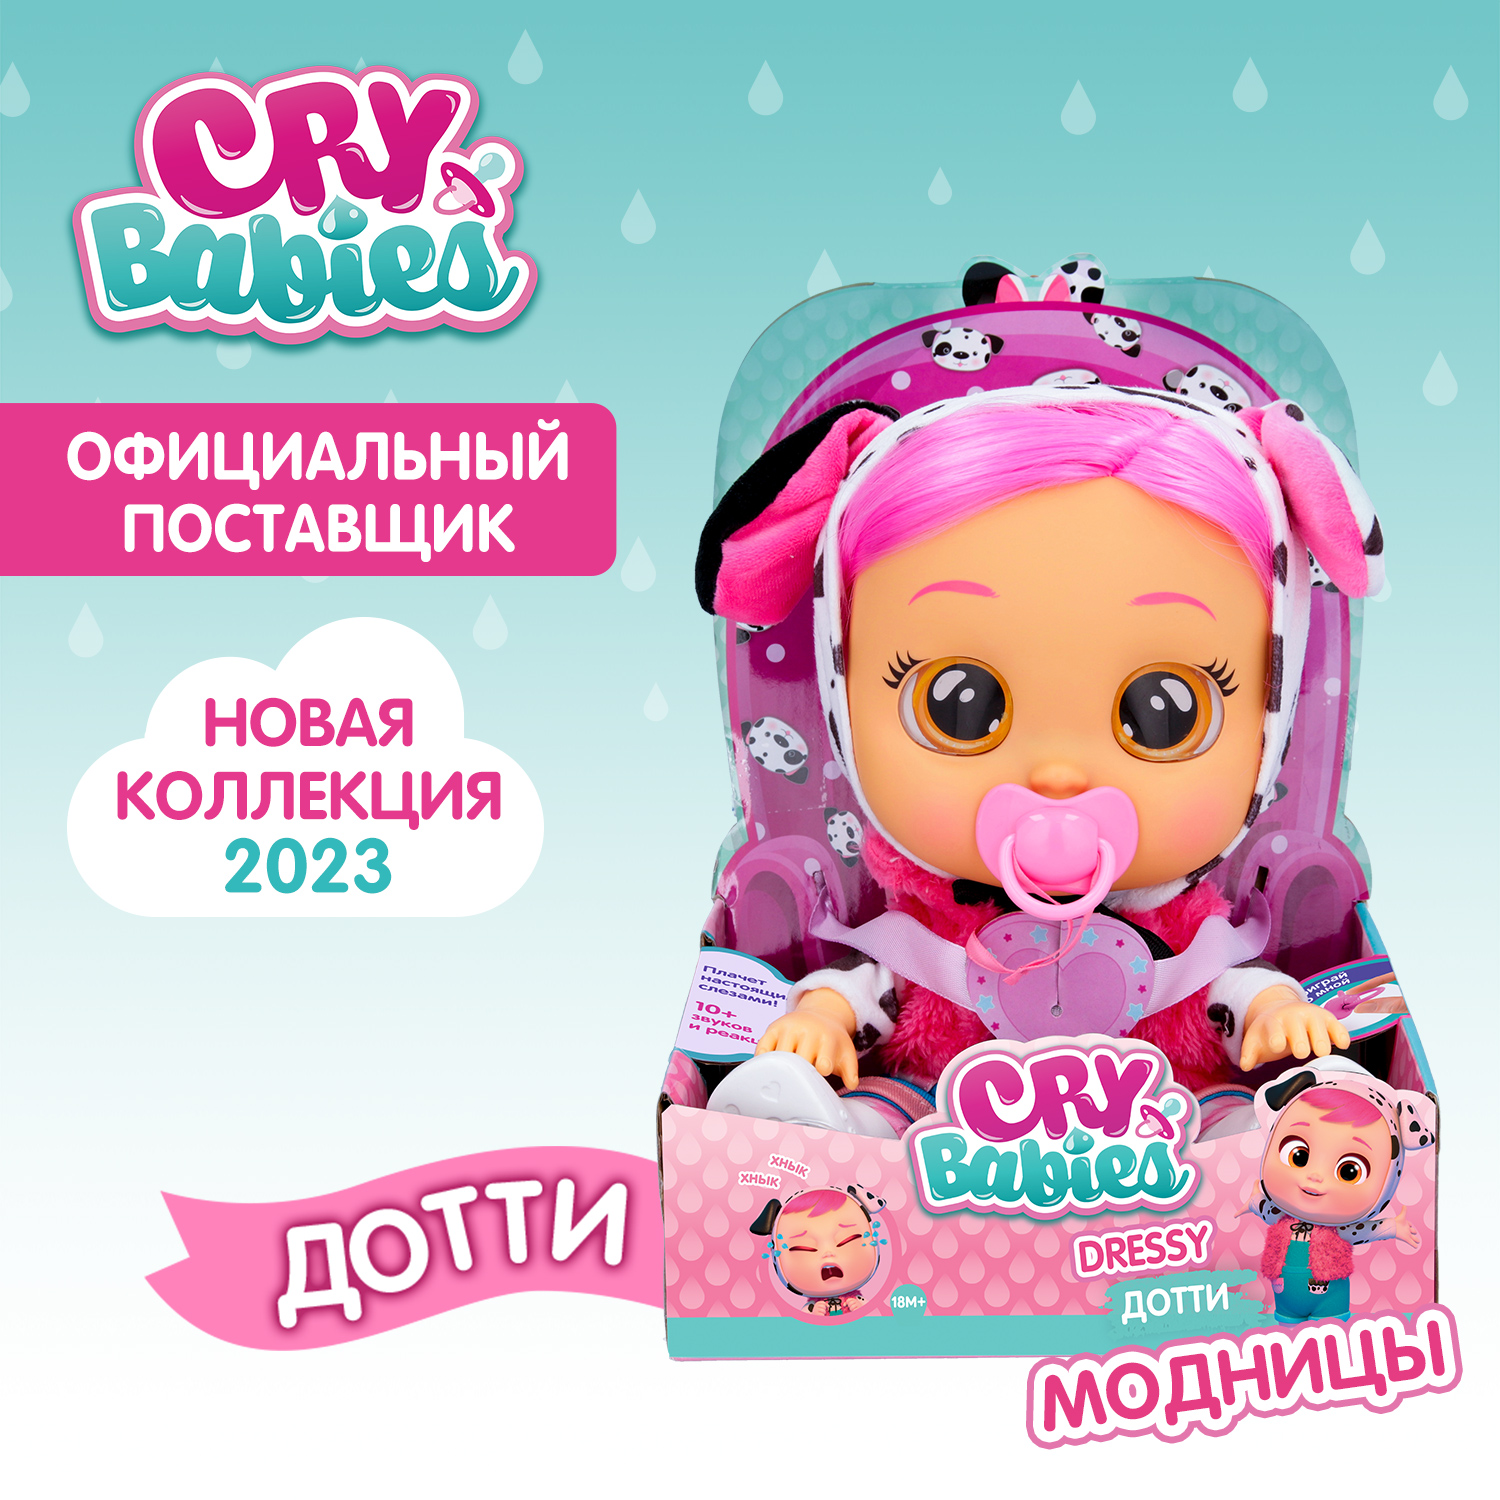 Кукла Cry Babies Дотти Модница, интерактивная, плачущая, 40884 кукла cry babies край бебис бруни малышка интерактивная плачущая 41039